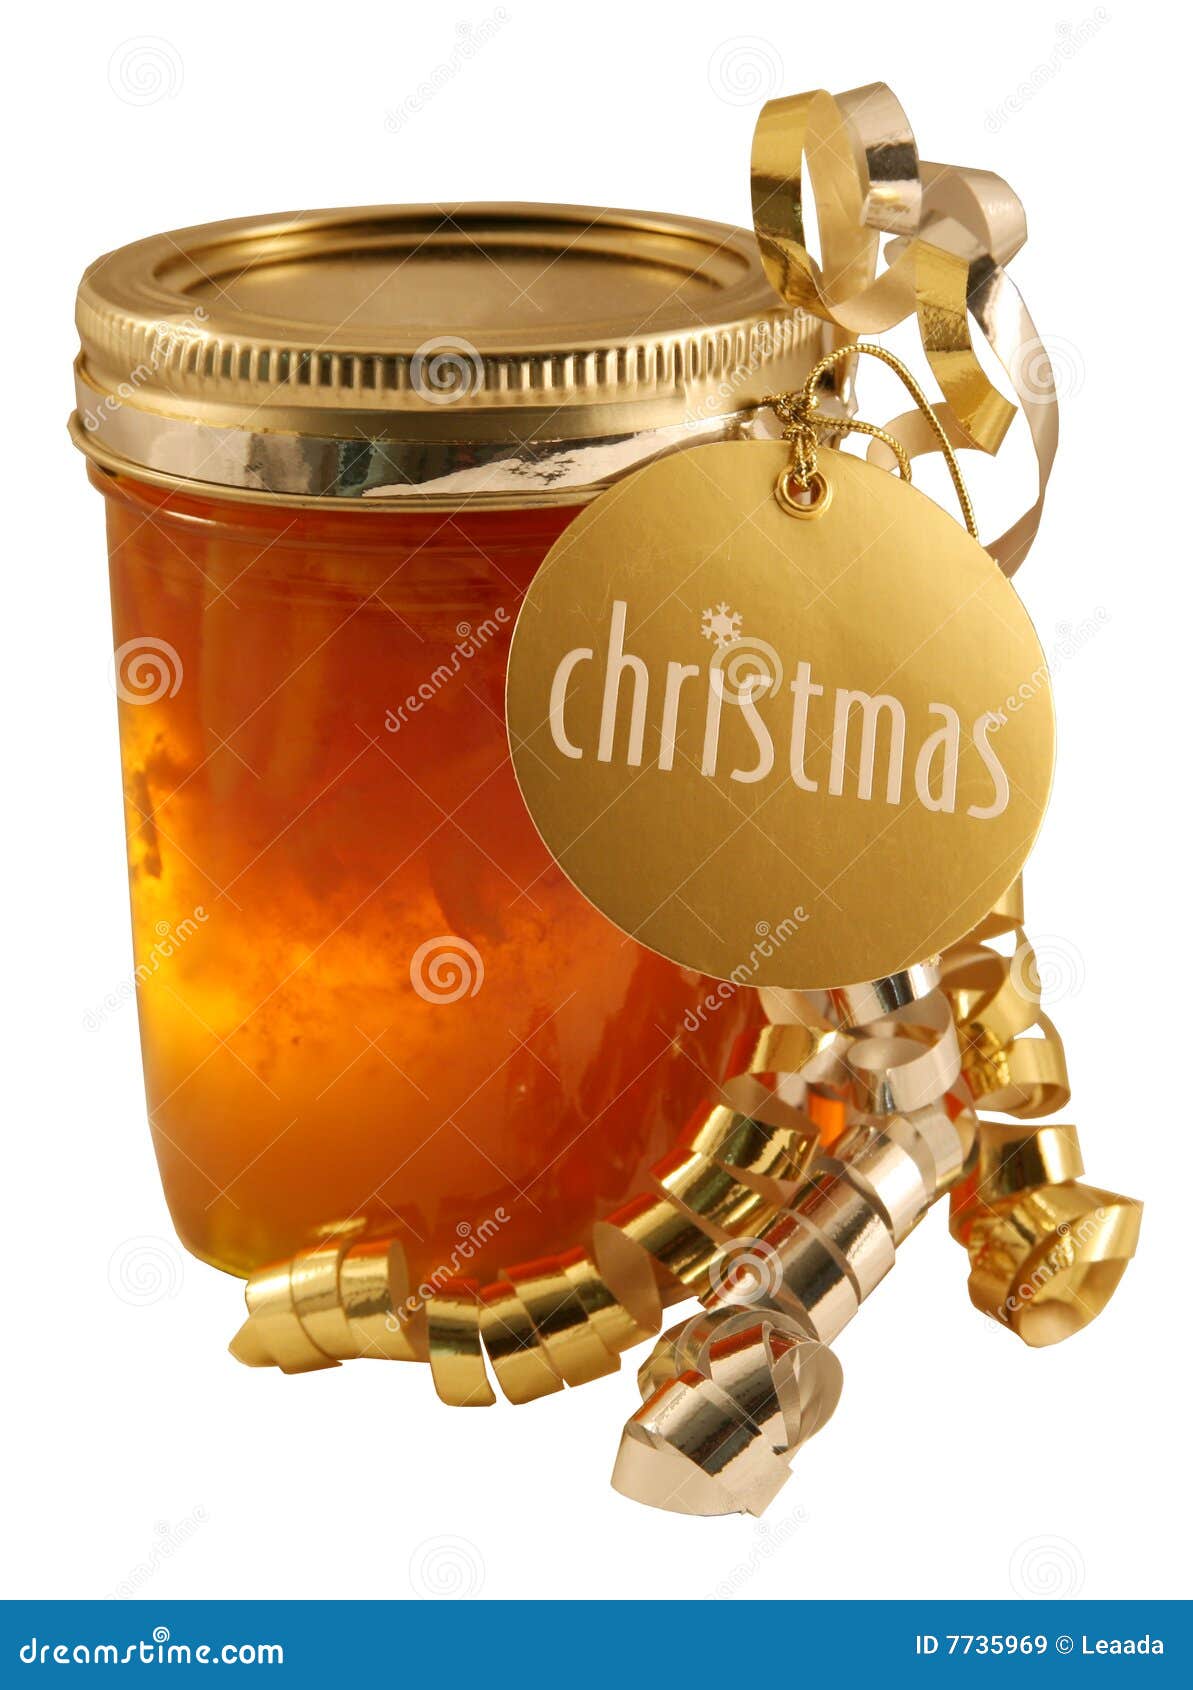 christmas marmalade